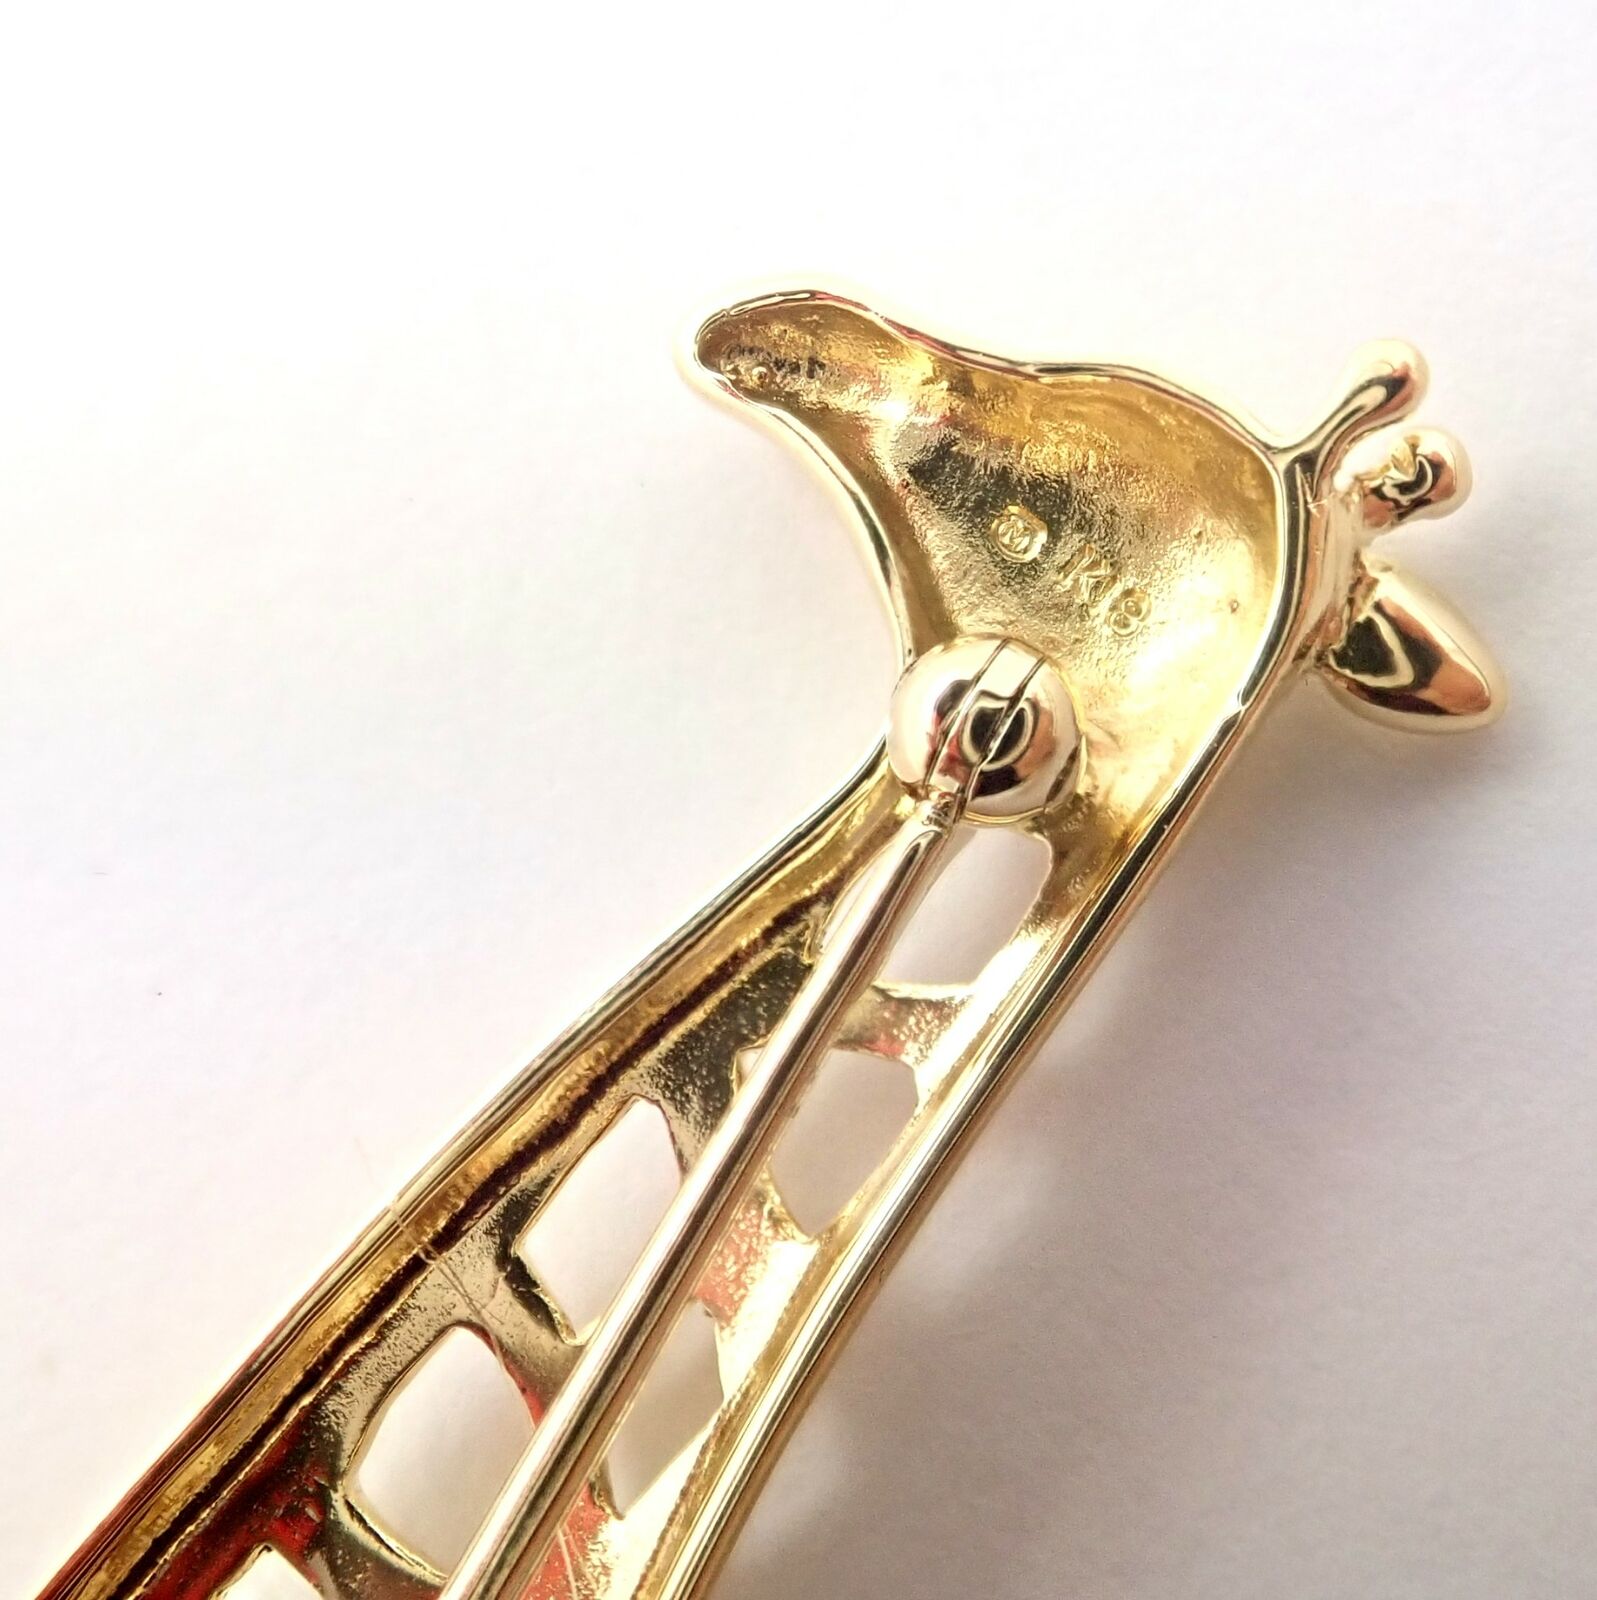 Mikimoto Jewelry & Watches:Fashion Jewelry:Brooches & Pins Rare! Authentic Mikimoto 18k Yellow Gold Large Giraffe Pin Brooch